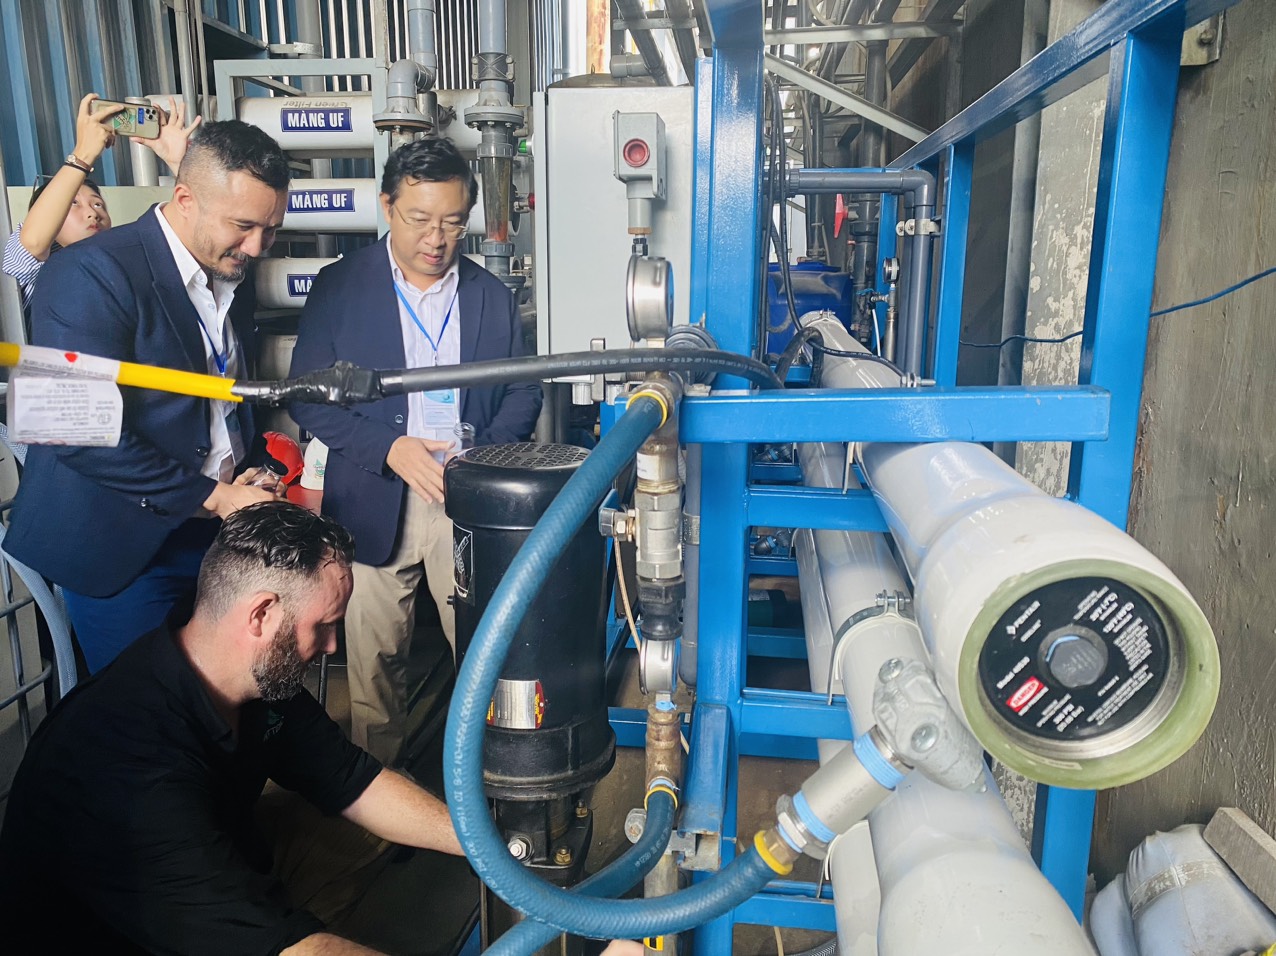 Ông Phạm Hồng Quất, Cục trưởng Cục Phát triển thị trường và doanh nghiệp KH&CN kiểm tra thực tế công nghệ xử lý nước nano được lắp đặt thử nghiệm. Ảnh: VGP